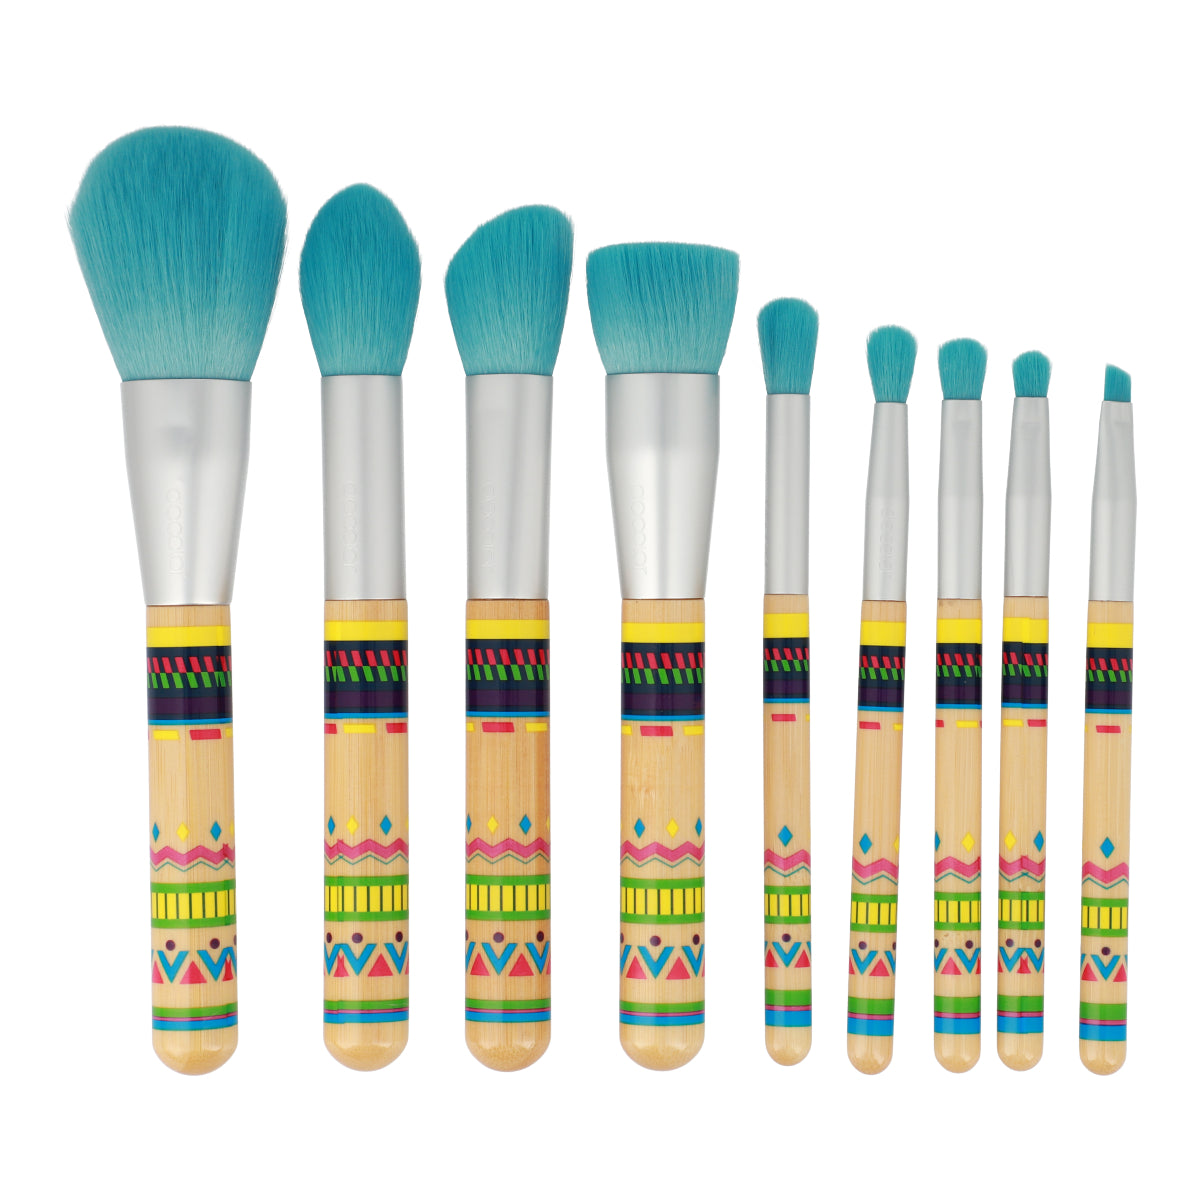 BOHO Bambu 9 Pieces Makeup Brush Set